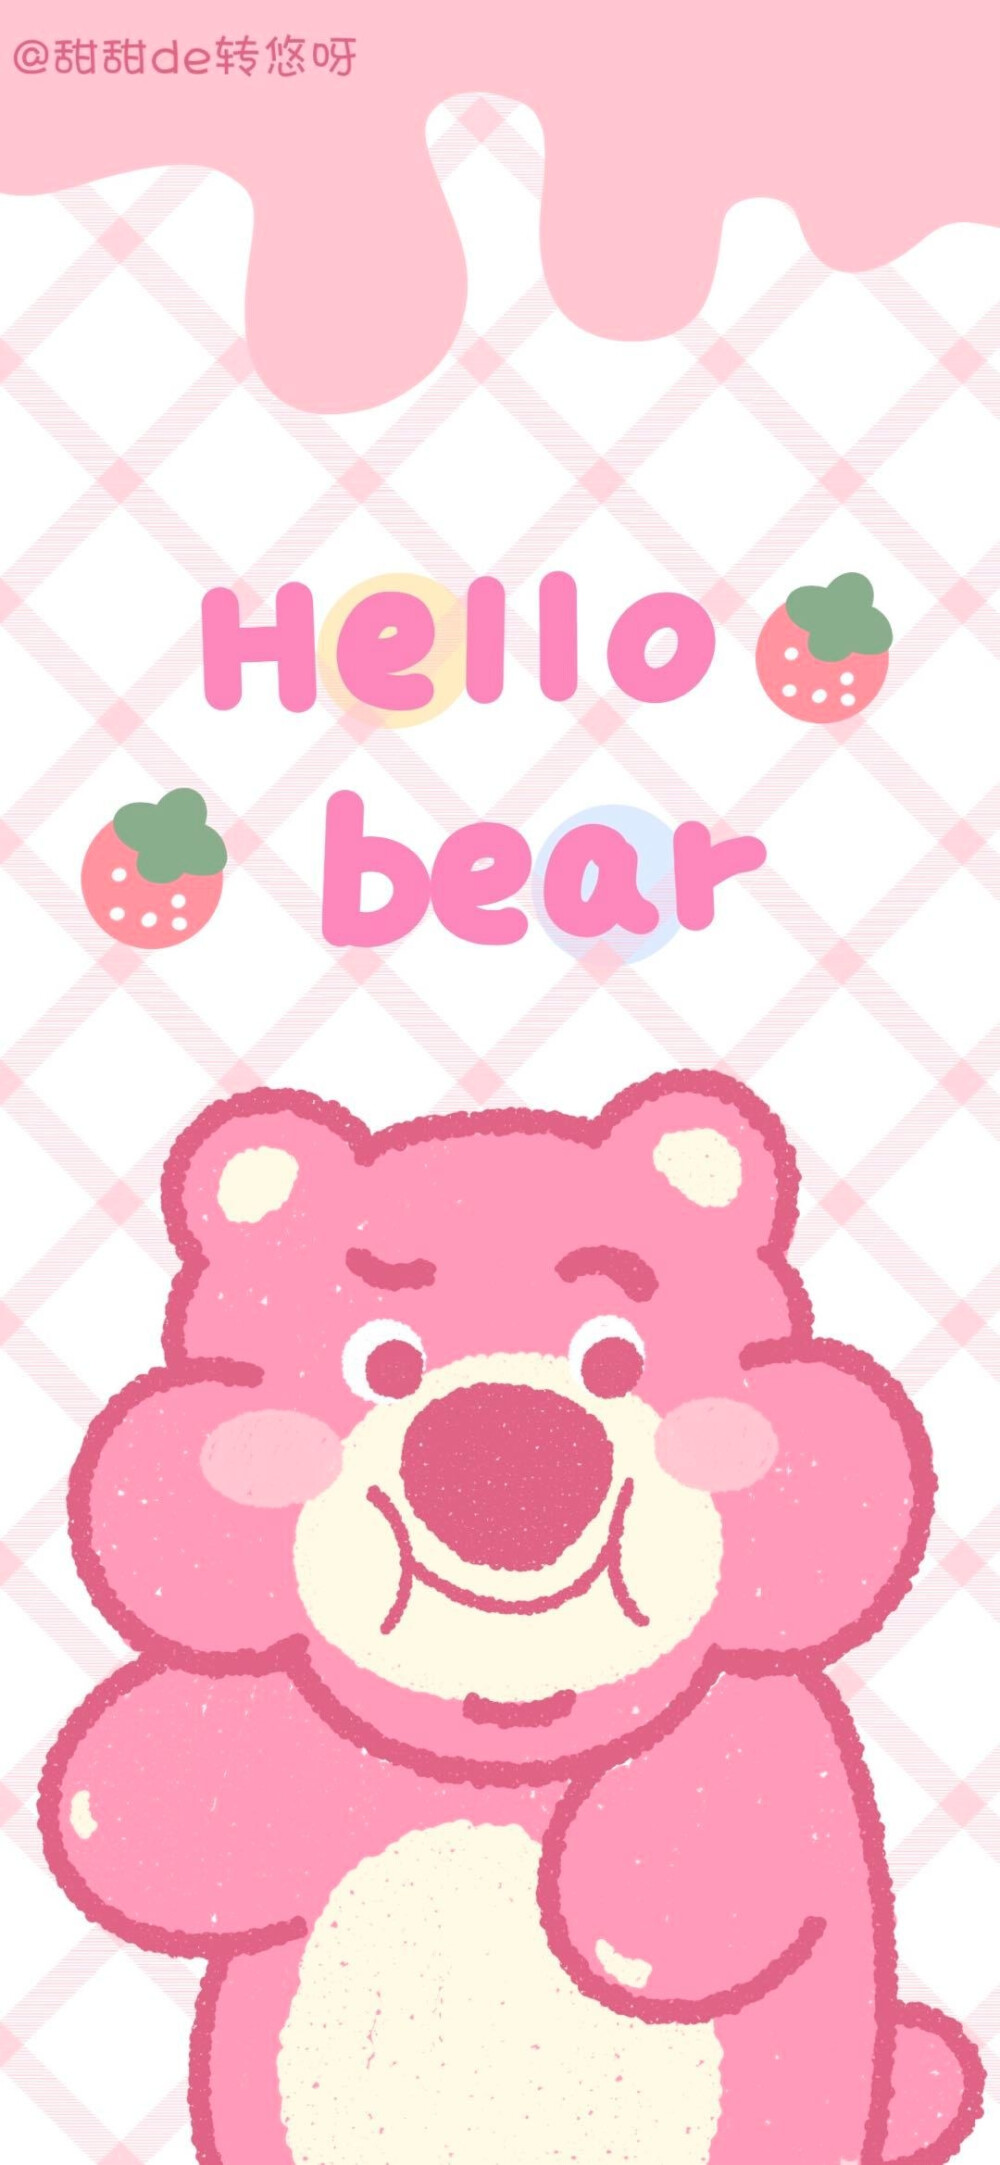 草莓熊壁纸可爱简约图片